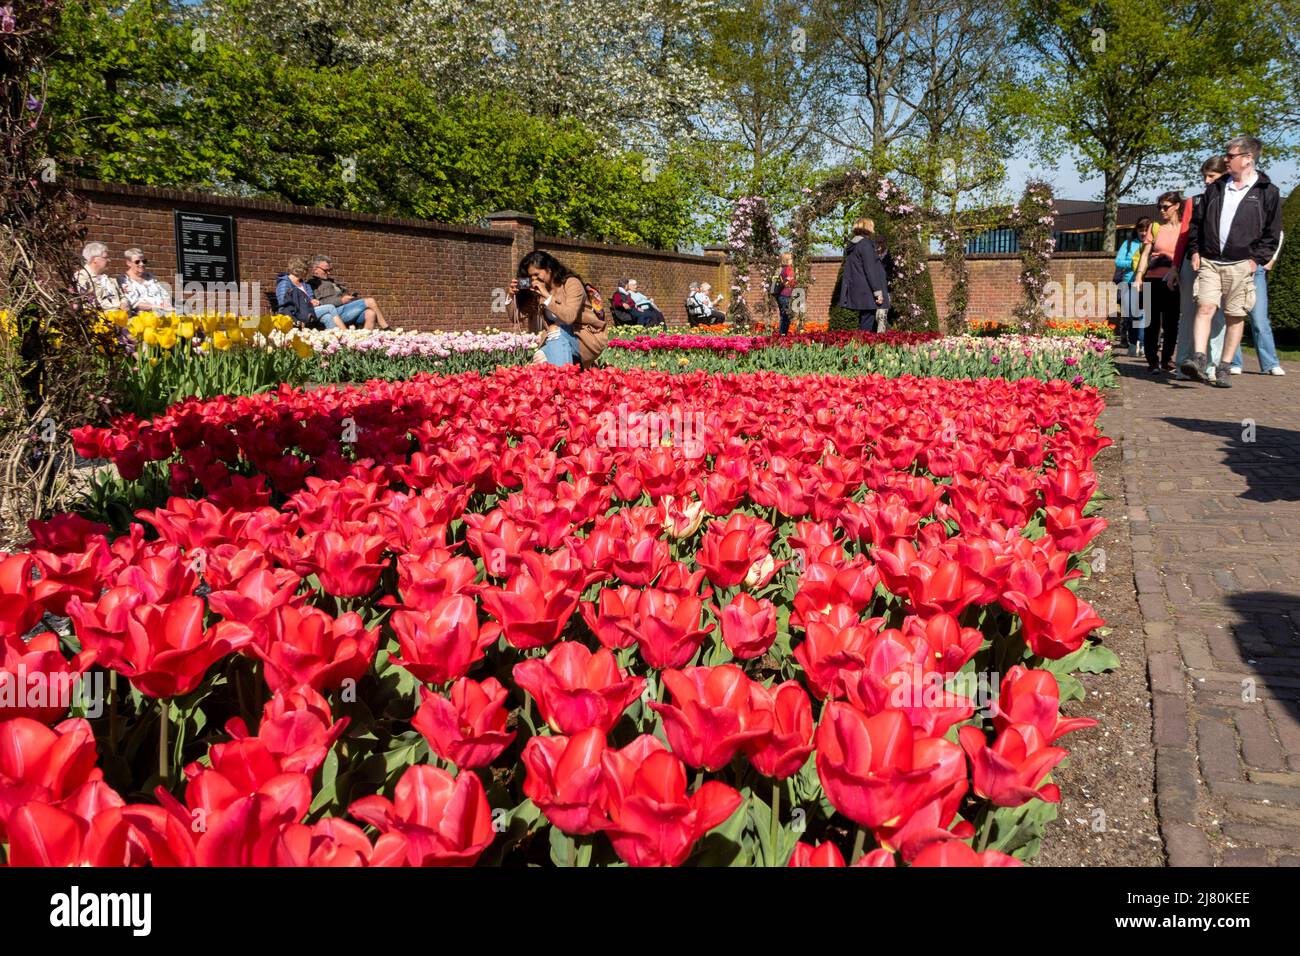 Il Parco Keukenhof, noto anche come il Giardino d'Europa, è uno dei giardini fioriti più grandi del mondo, situato nel comune di Lisse, nei Paesi Bassi Foto Stock